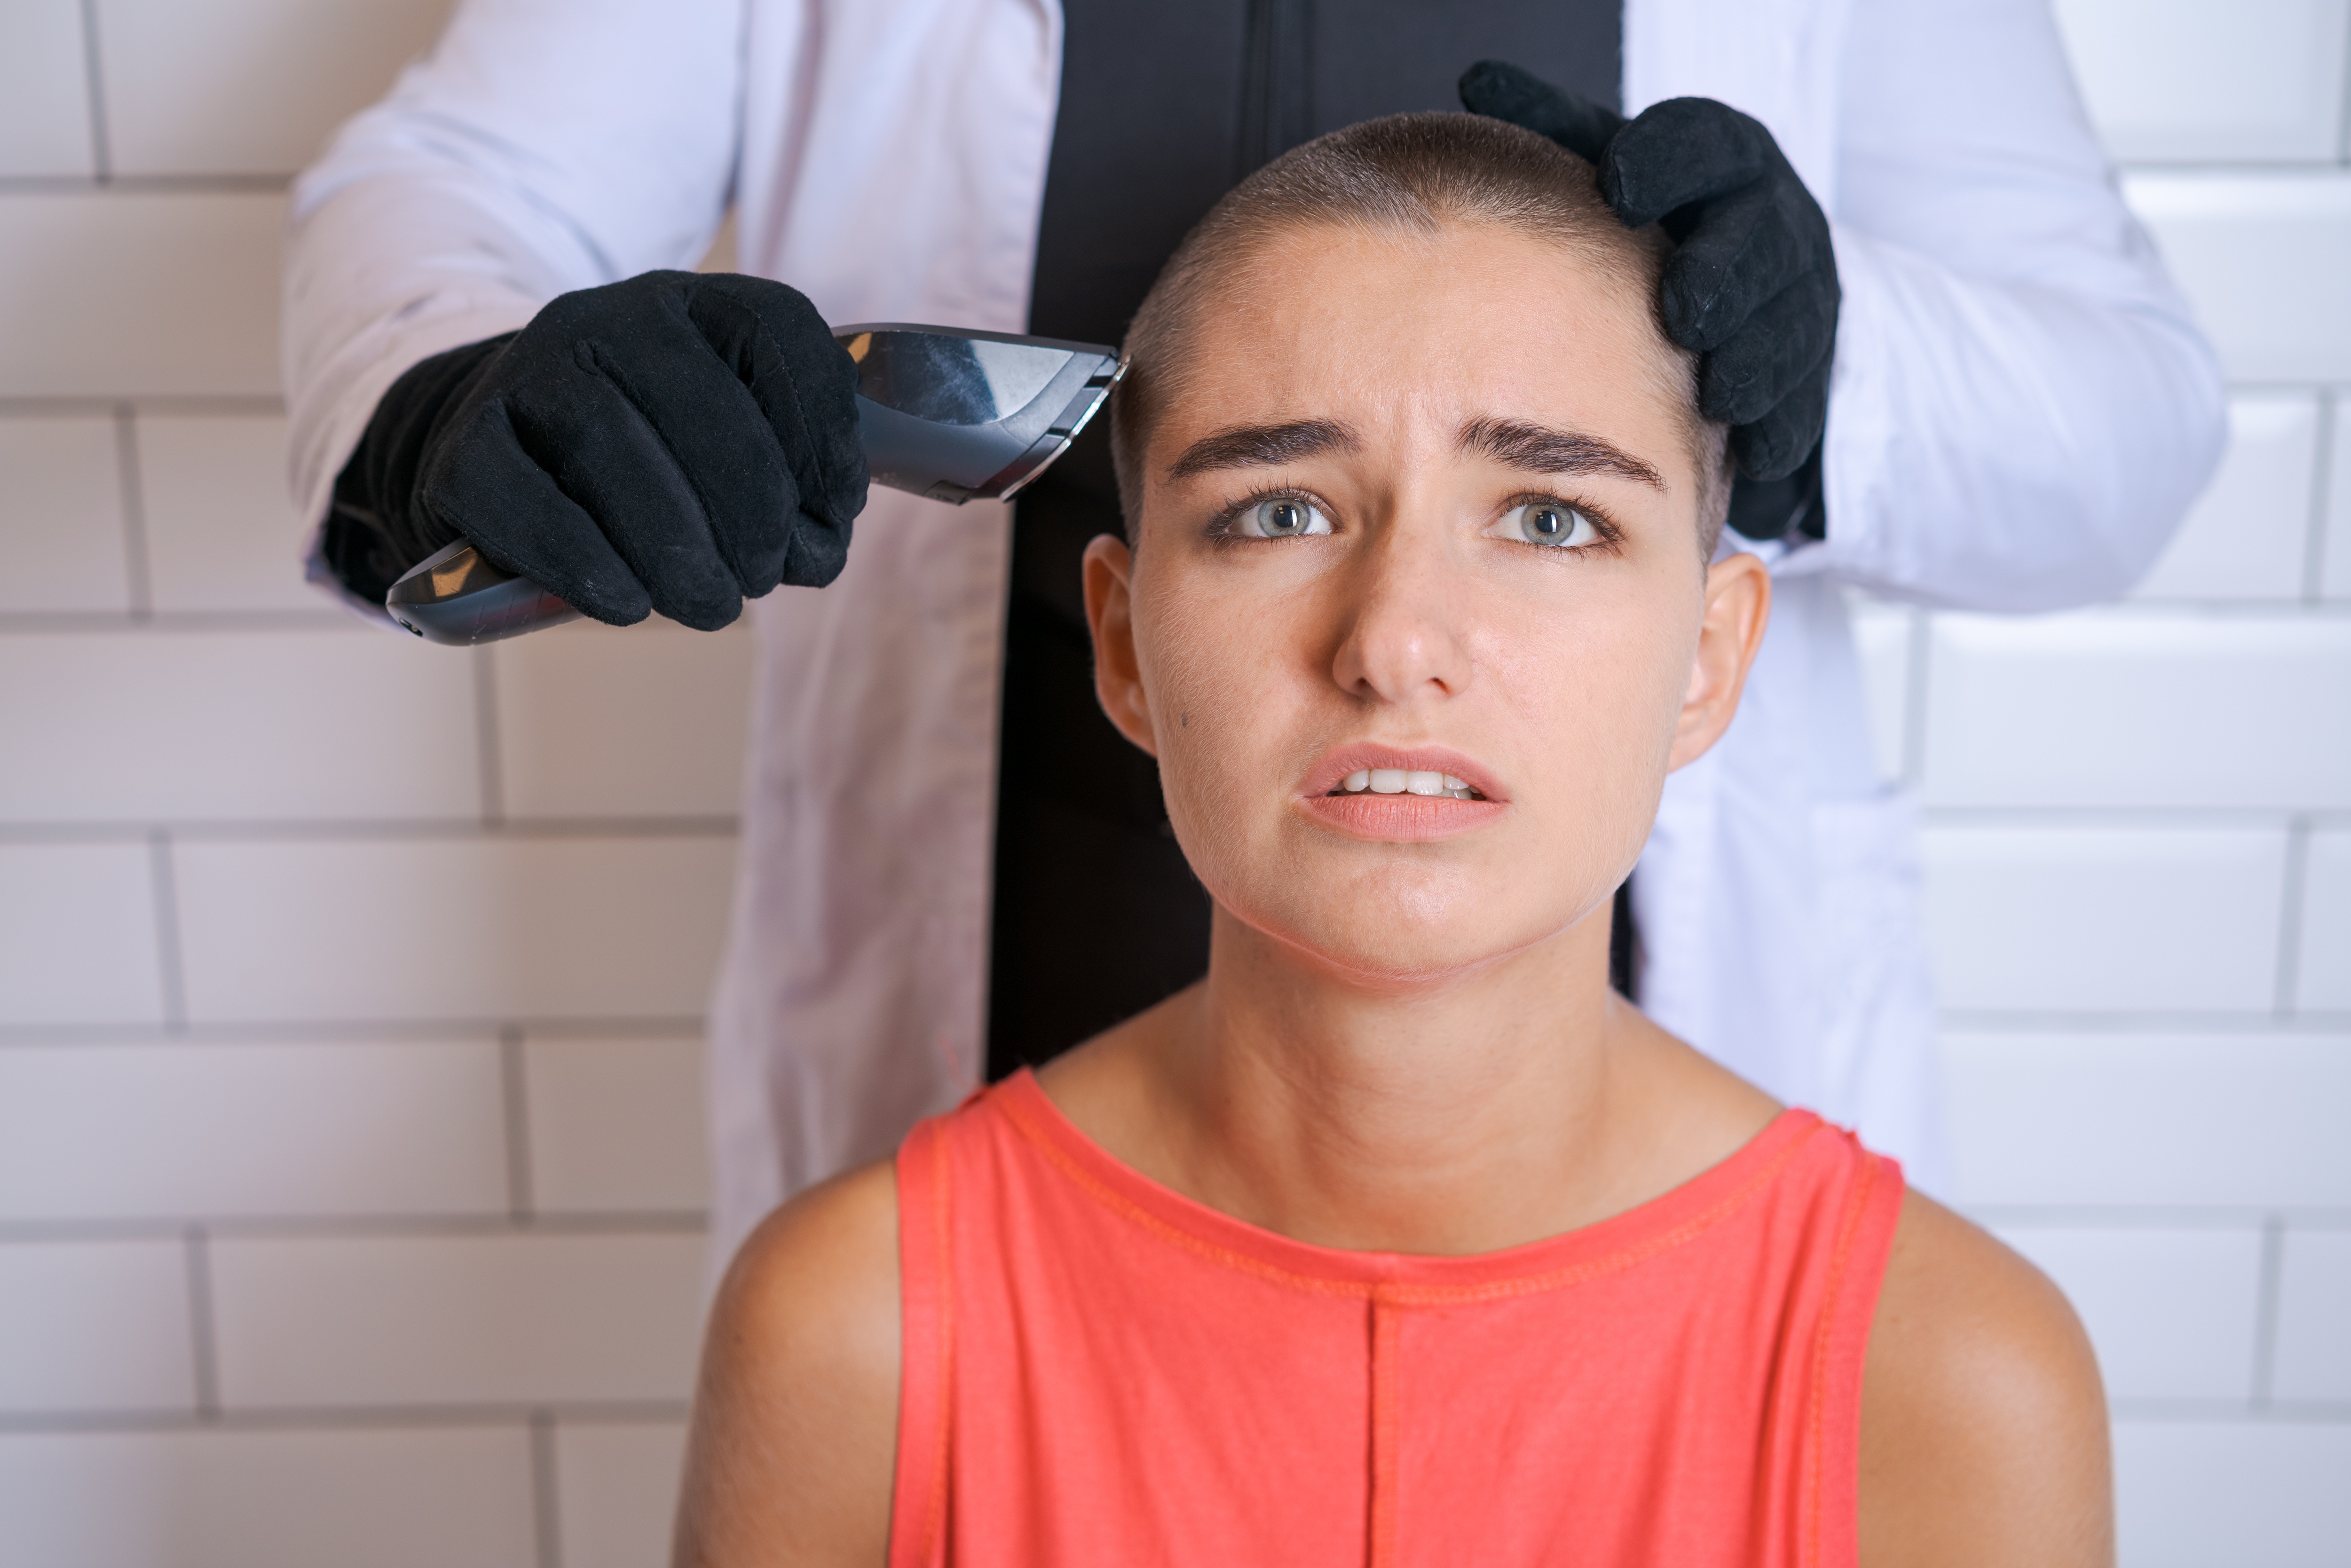 Eine Frau, die gezwungen wird, sich die Haare zu rasieren | Quelle: Shutterstock